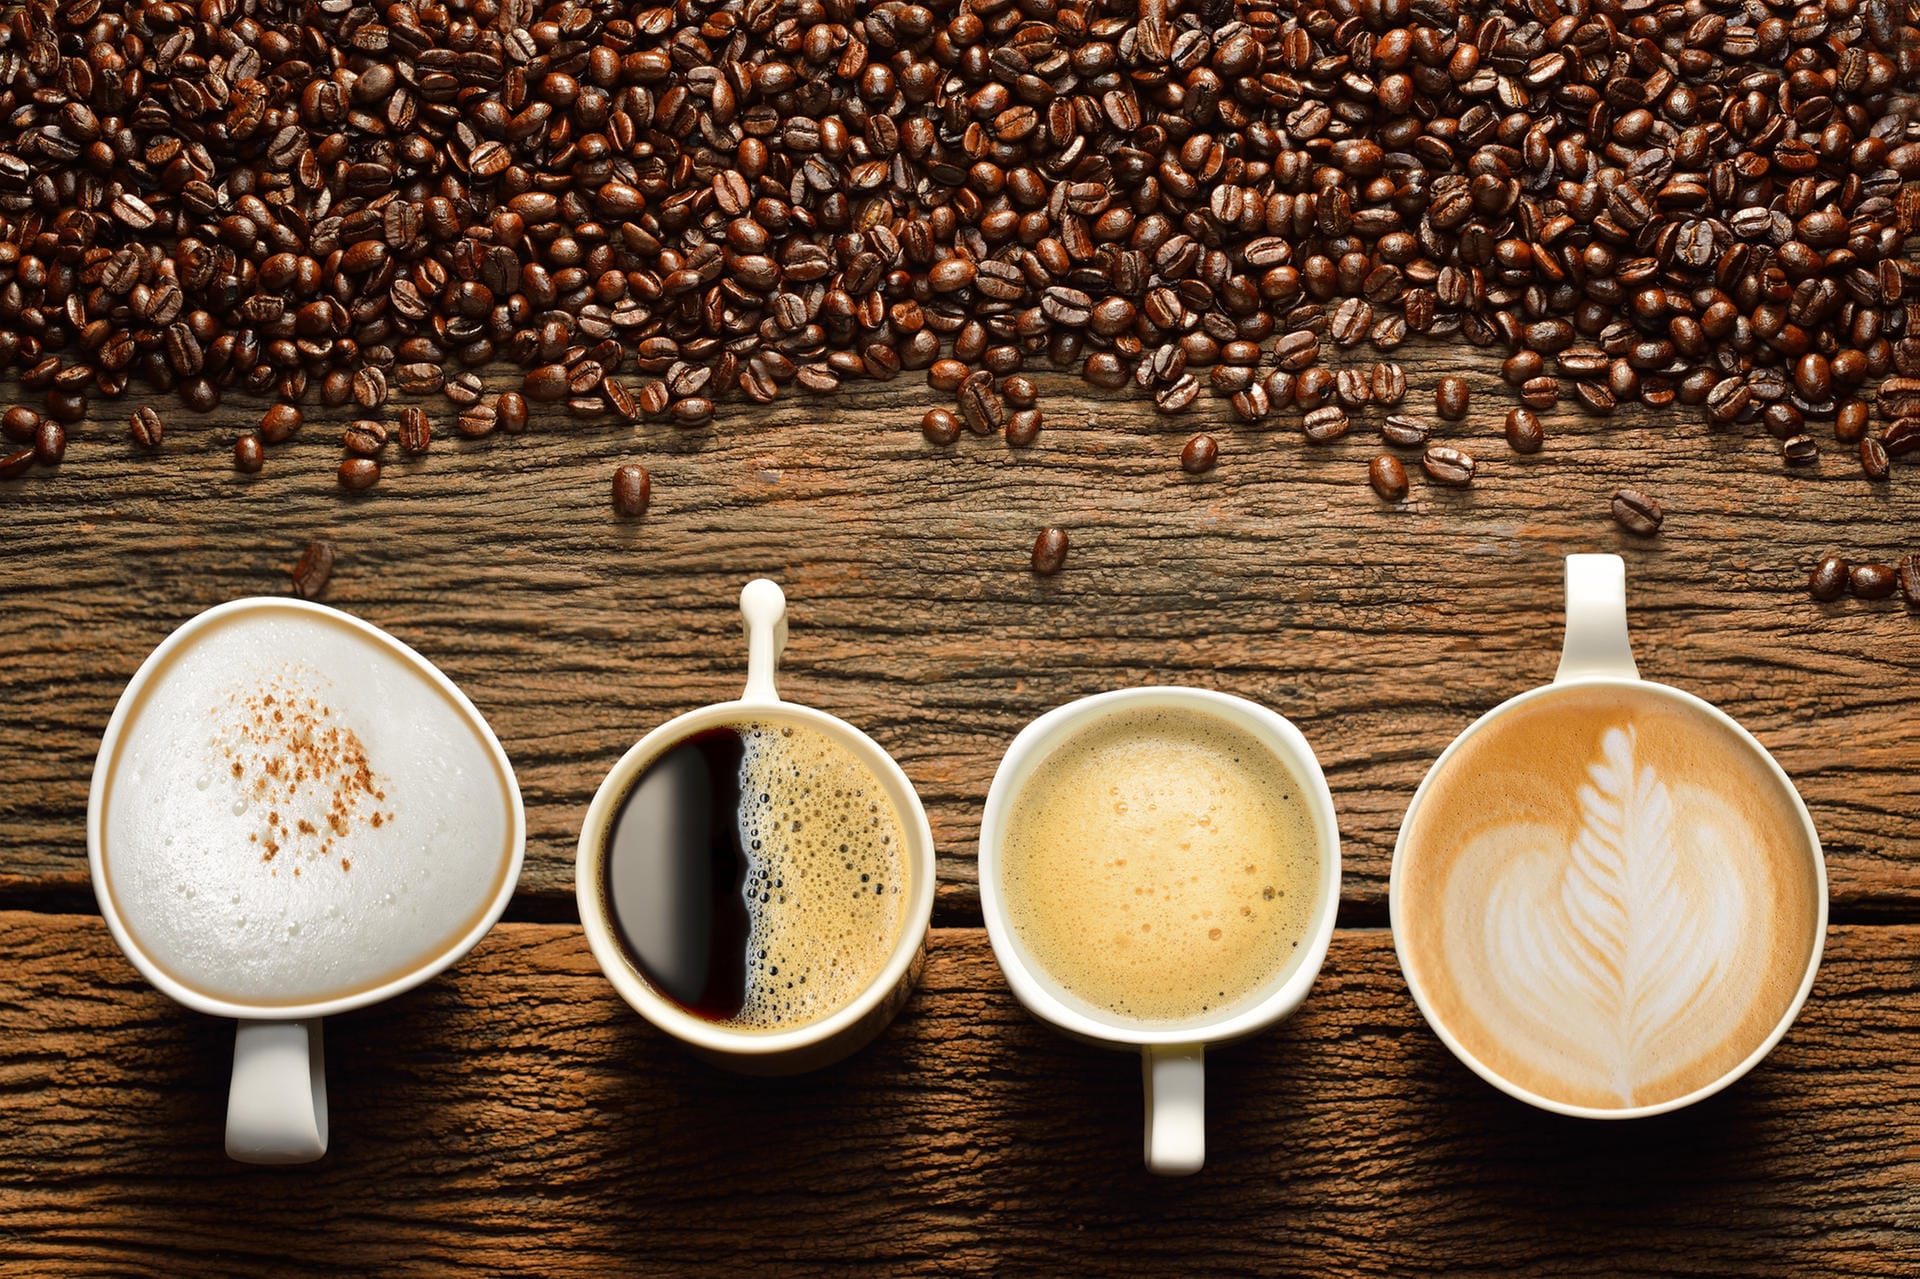 Über 1.000 Substanzen stecken in einer Kaffeebohne. Nicht alle sind erforscht. Nach Angaben der Deutschen Diabetes Stiftung (DDS) gibt es allerdings Studien, die darauf hinweisen, dass Kaffee Diabetes Typ 2 vorbeugen kann.